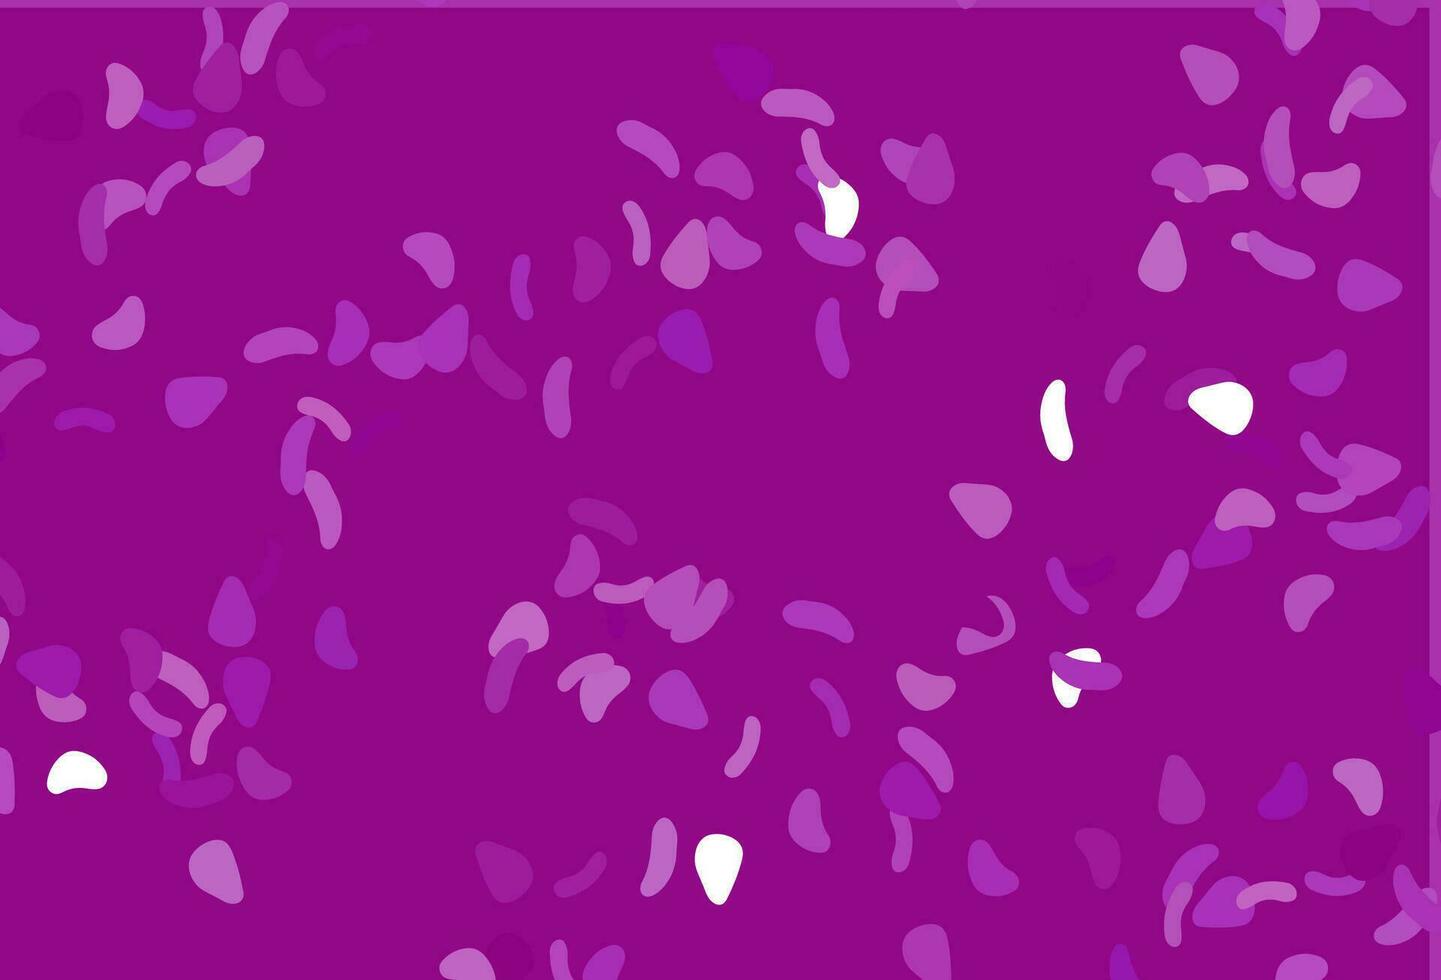 toile de fond vecteur violet clair avec des formes abstraites.